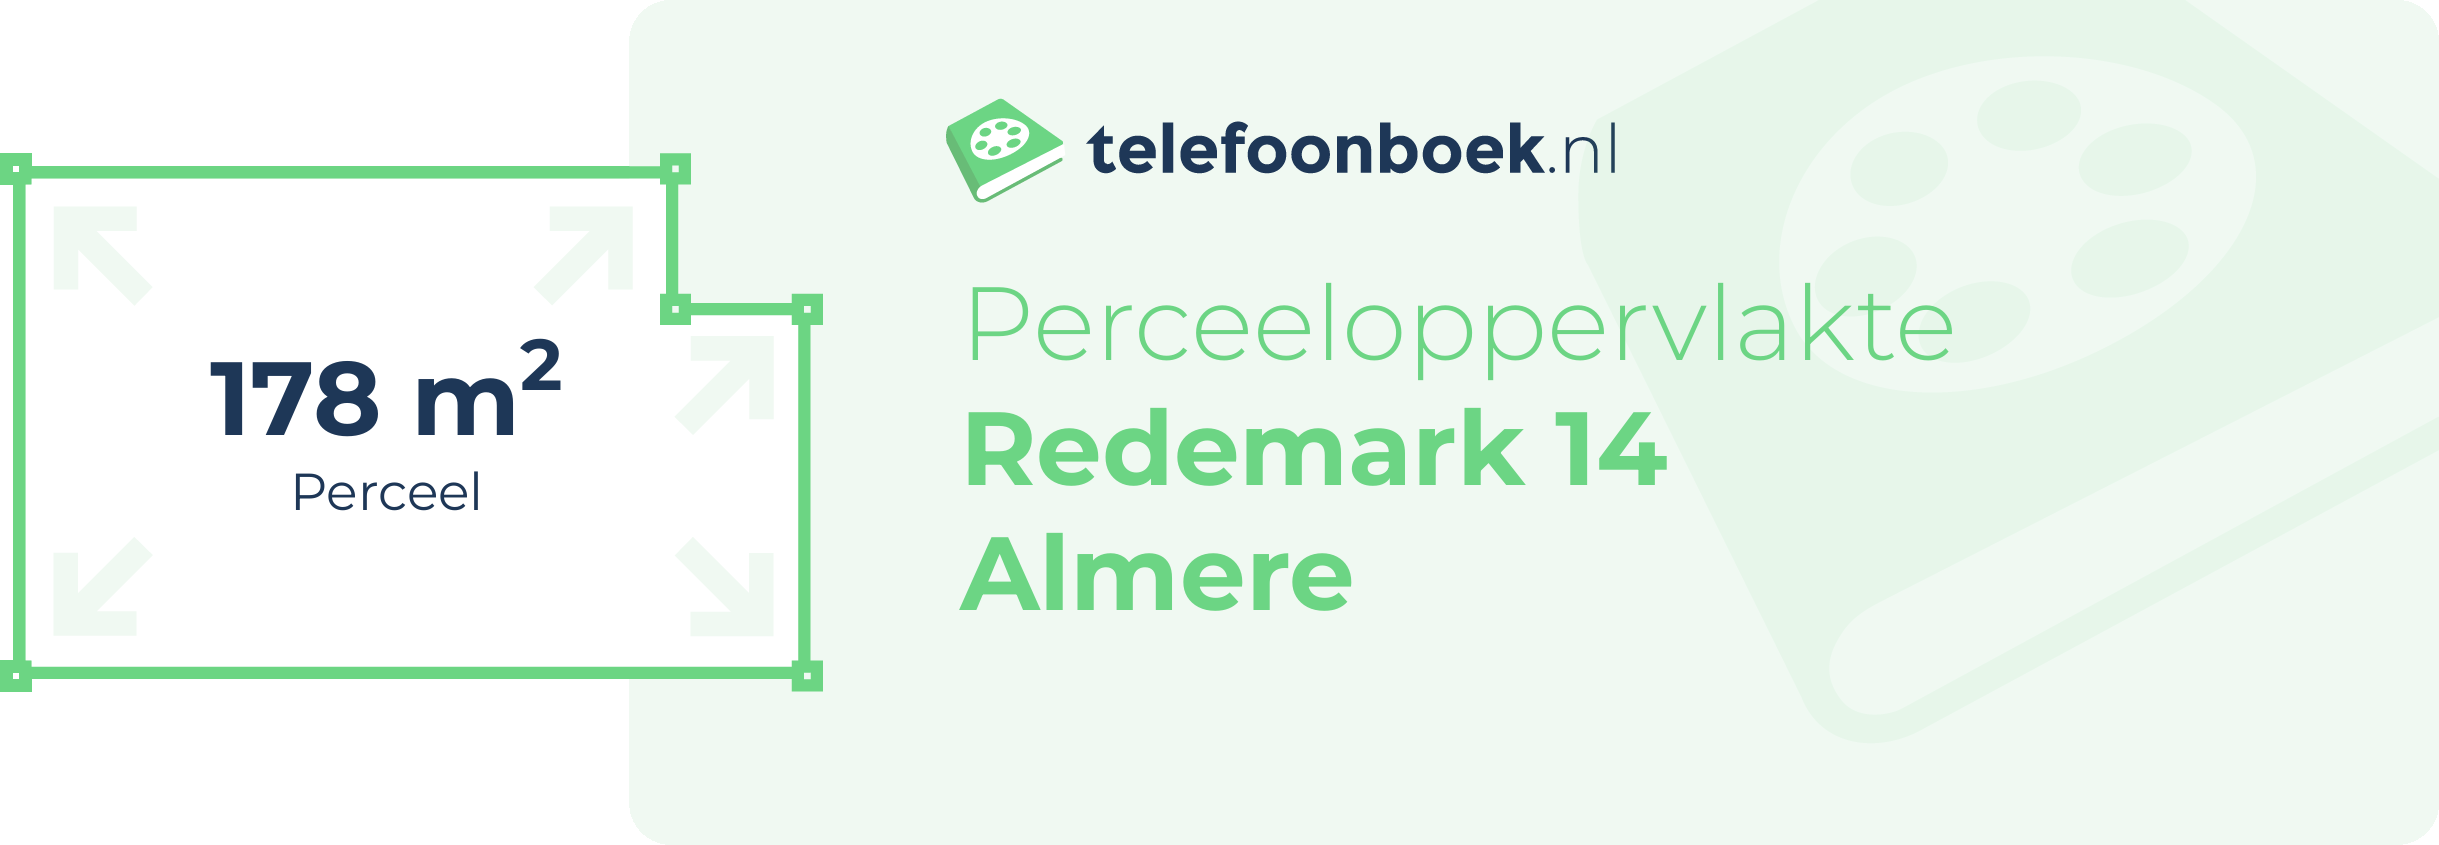 Perceeloppervlakte Redemark 14 Almere